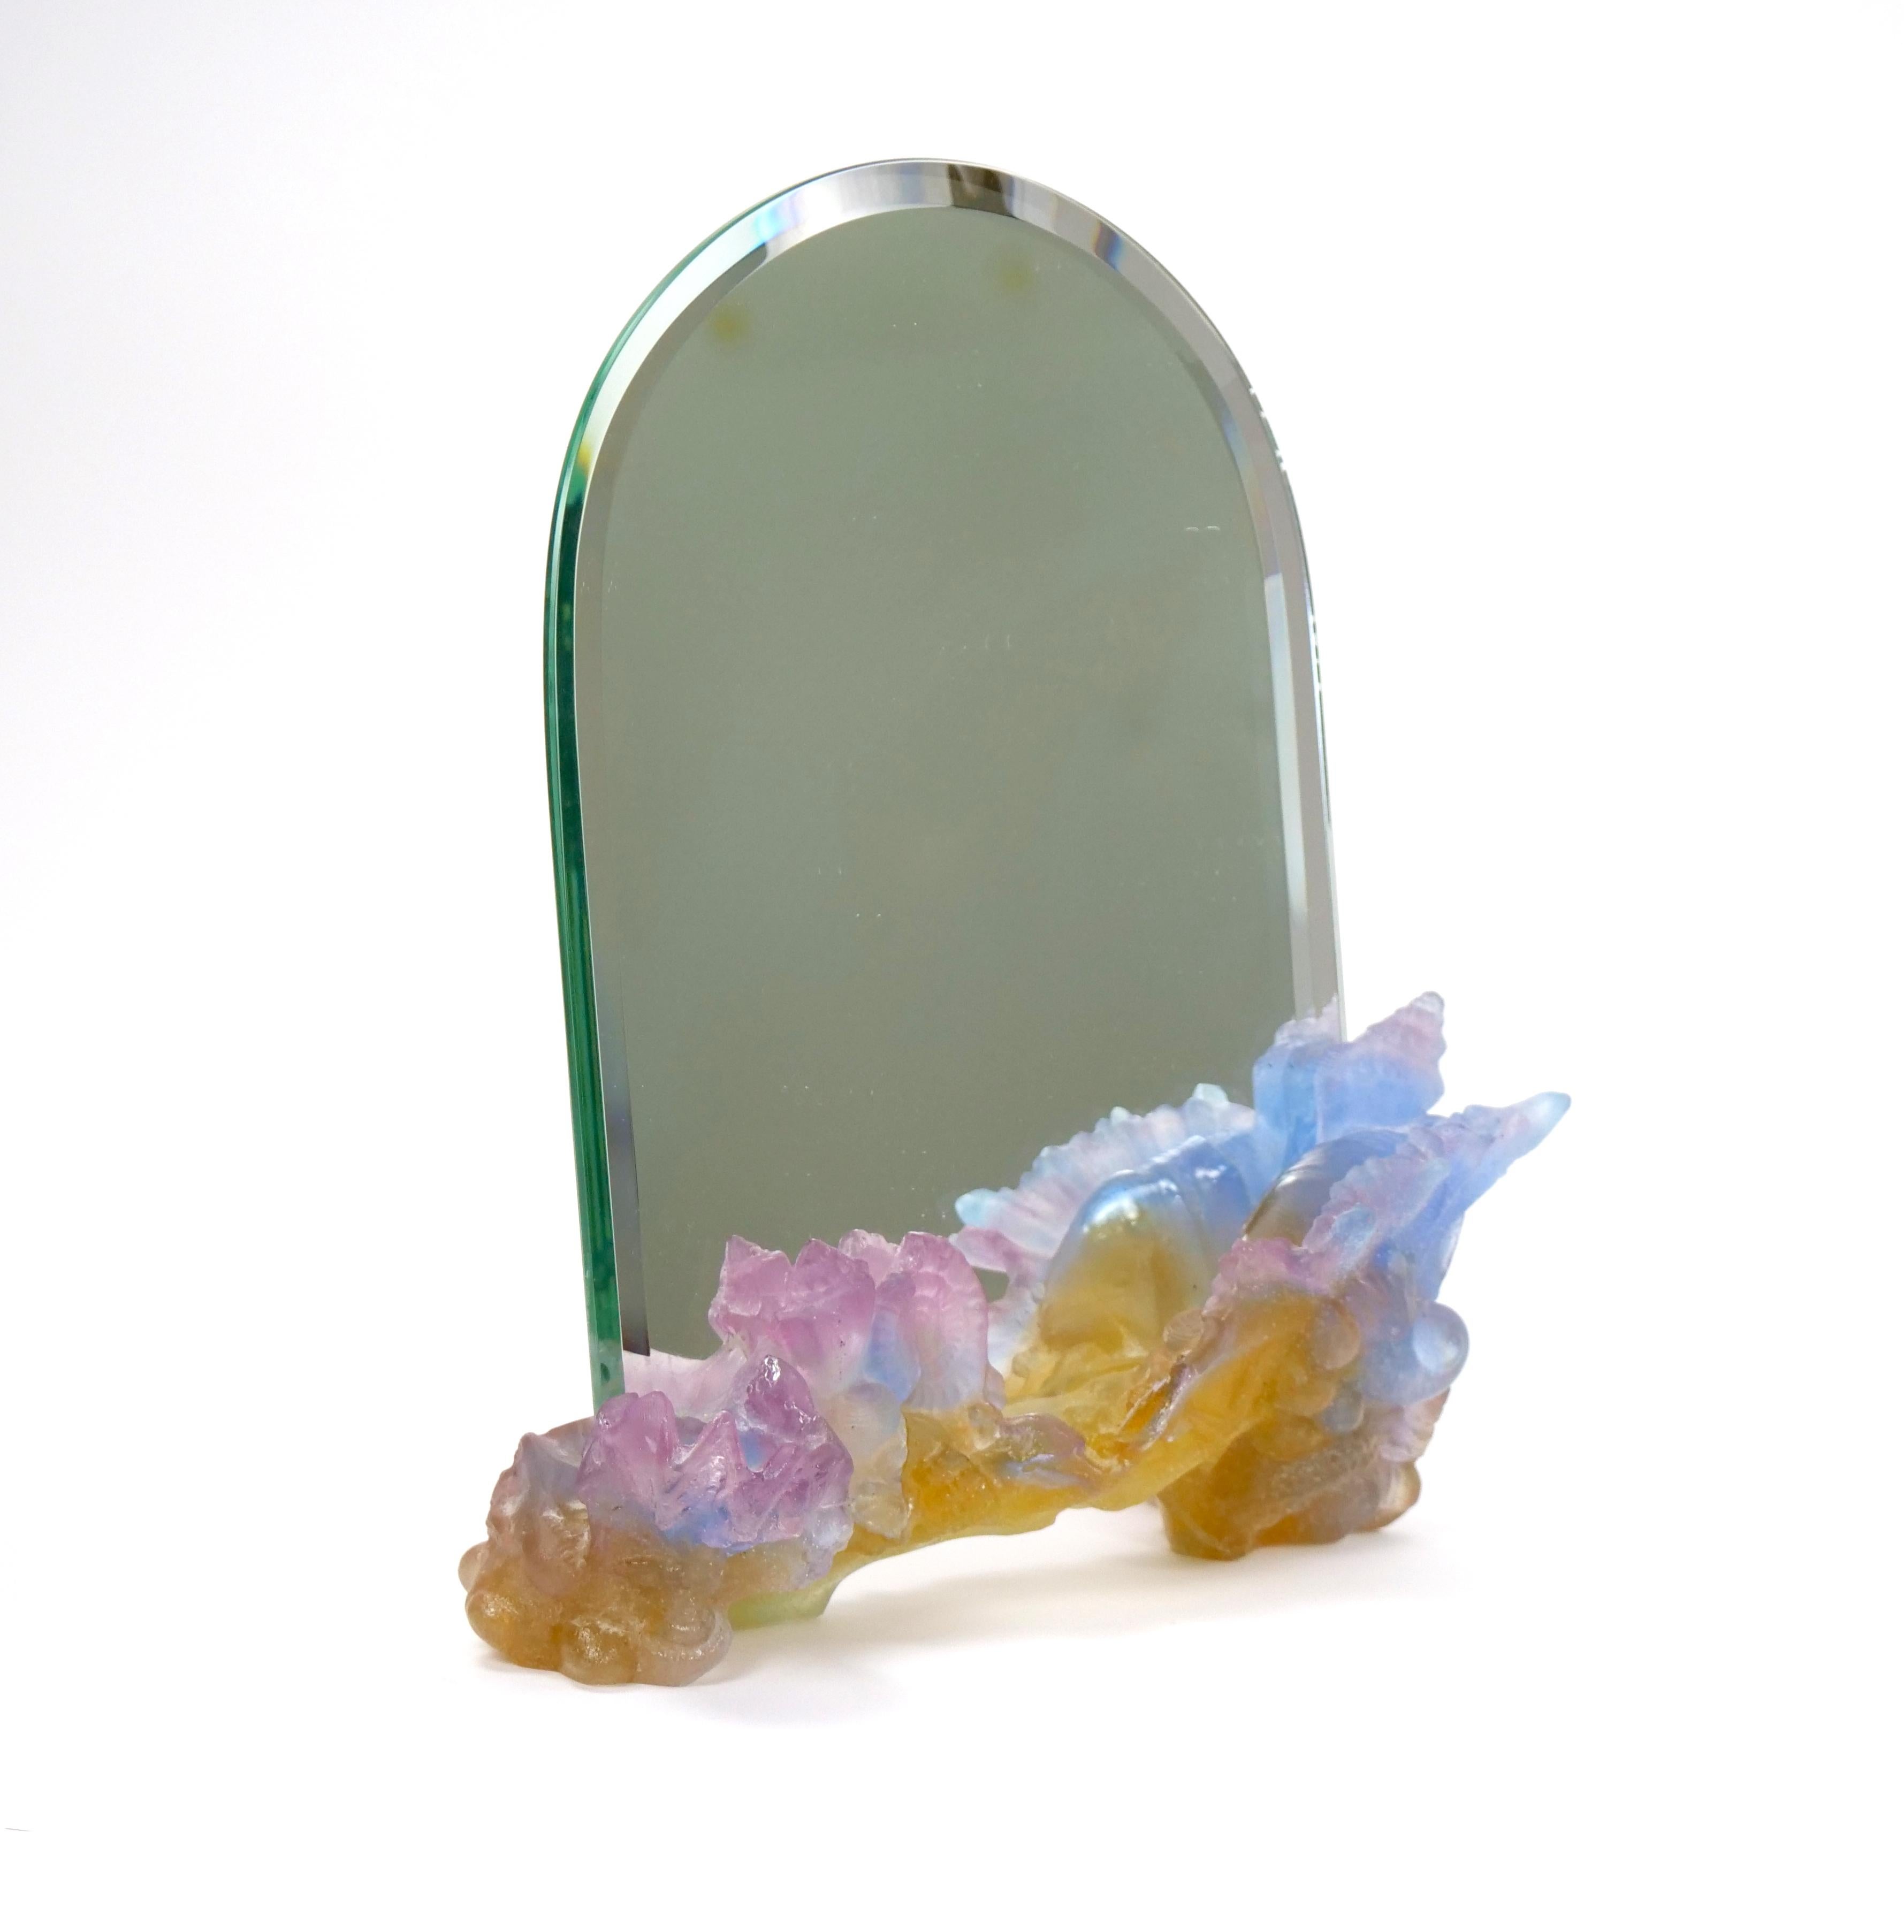 Mettez en valeur votre meuble-lavabo avec l'exquis miroir de table en cristal de Daum Pâte-de-Verre, présenté avec art sur une base en verre coloré au thème nautique. Cette pièce époustouflante témoigne de l'art et du savoir-faire qui définissent la